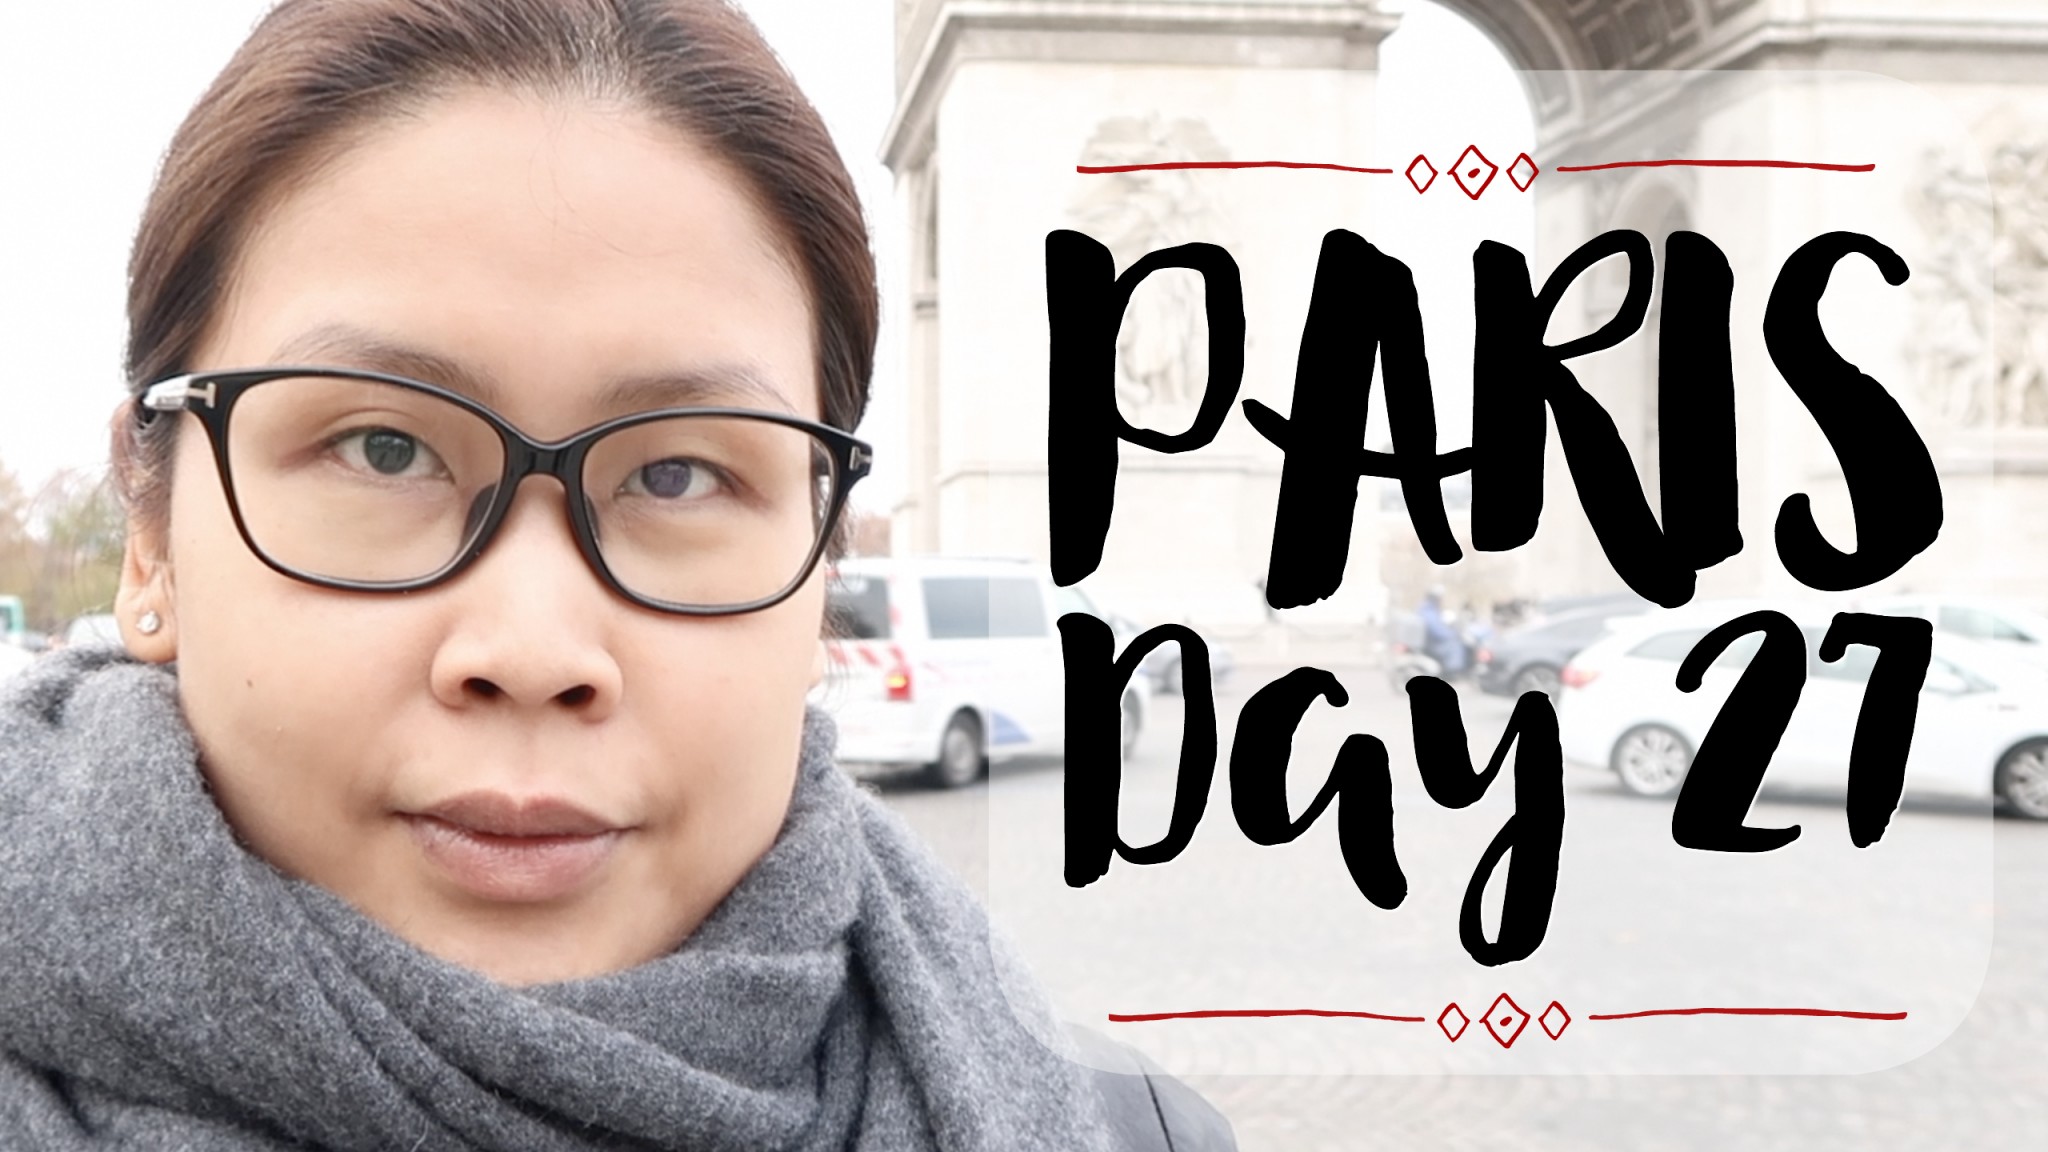 終於影到凱旋門 + Laduree食Tea + Lily Wang食亞洲fusion菜 [法國巴黎自由行Day 27] | 黑咪Vlogmas